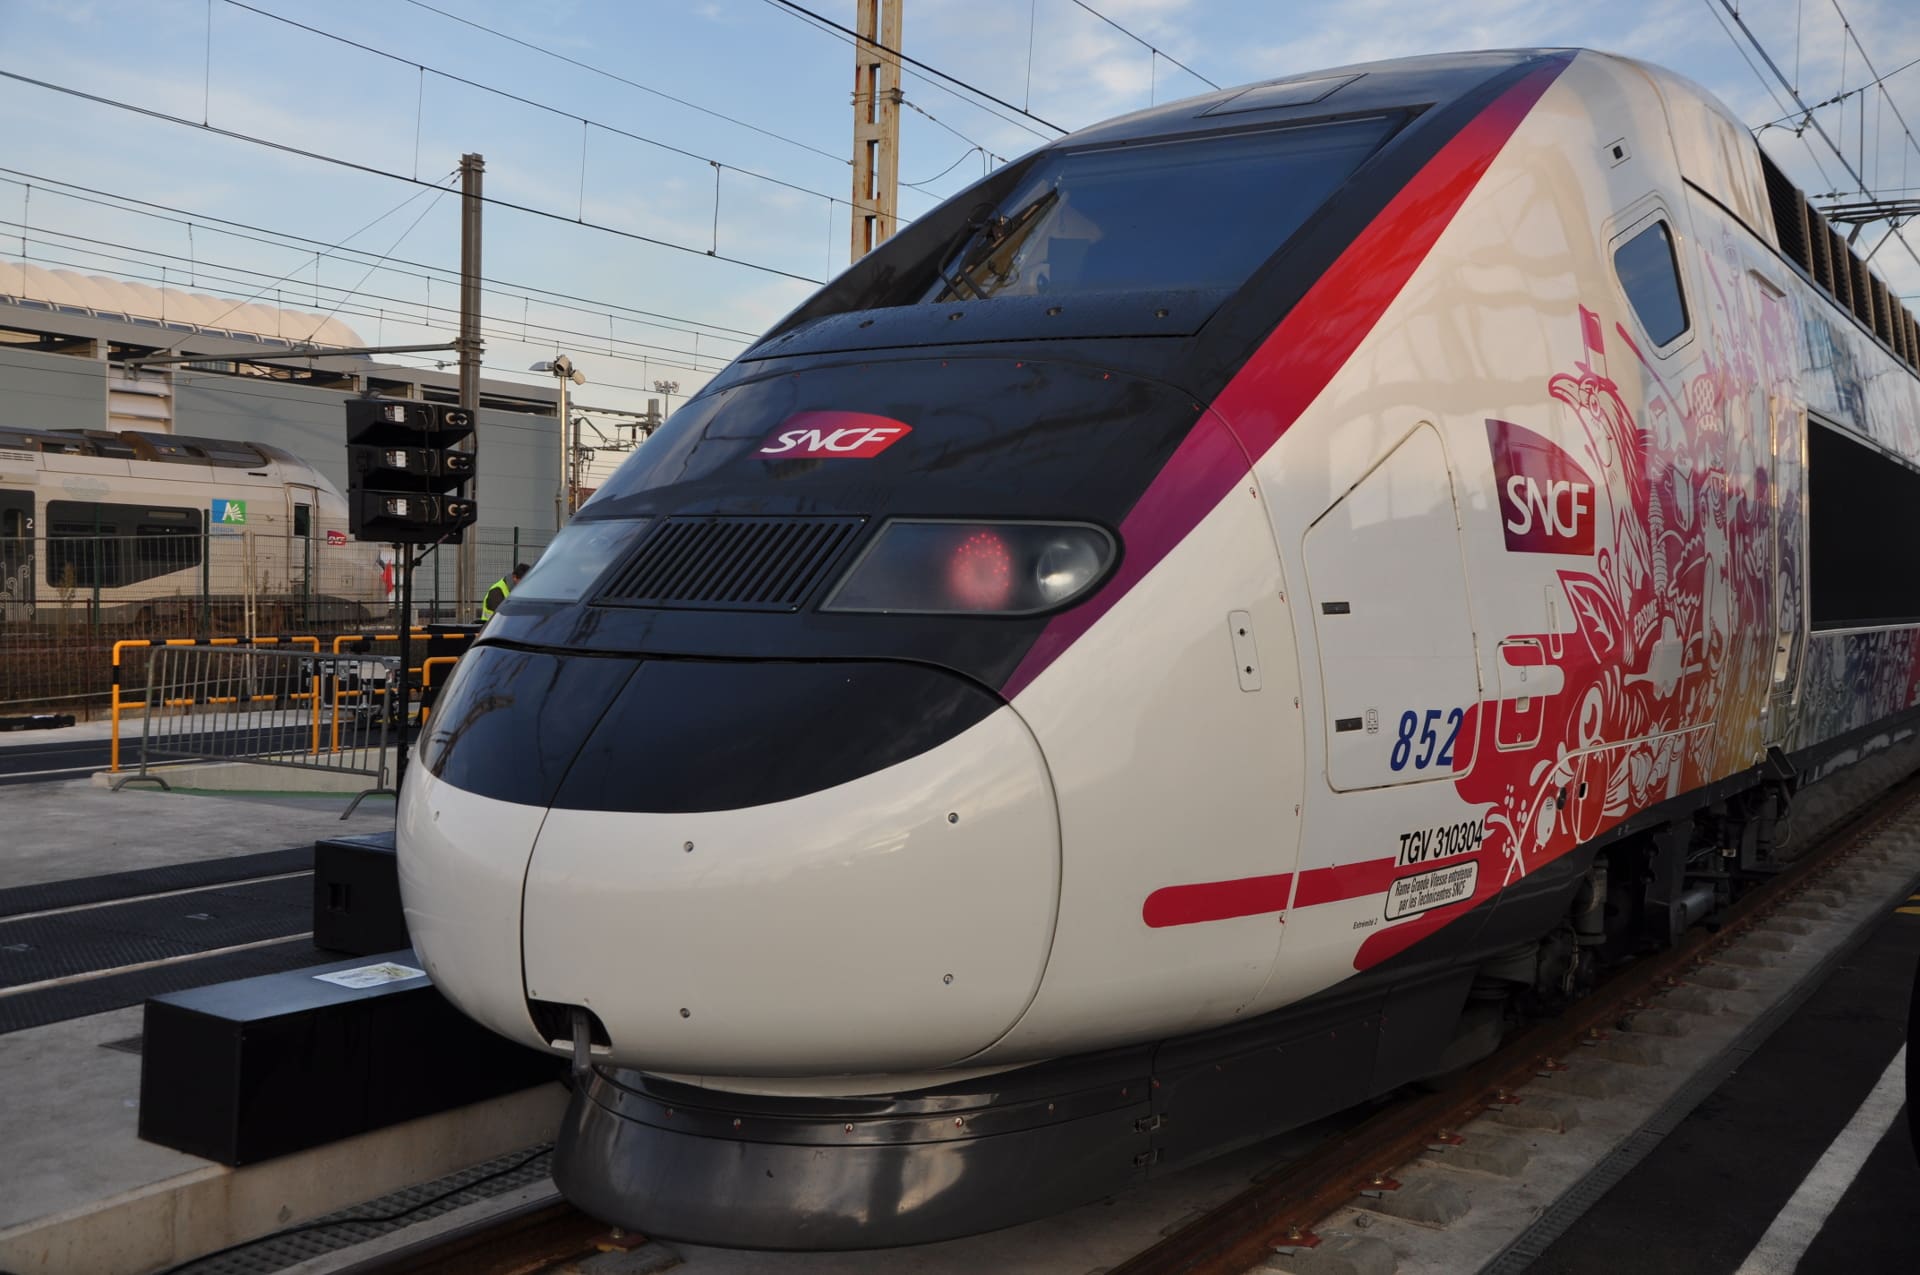 Des bugs de la SNCF sur les infos et tarifs des TGV Paris-Bordeaux